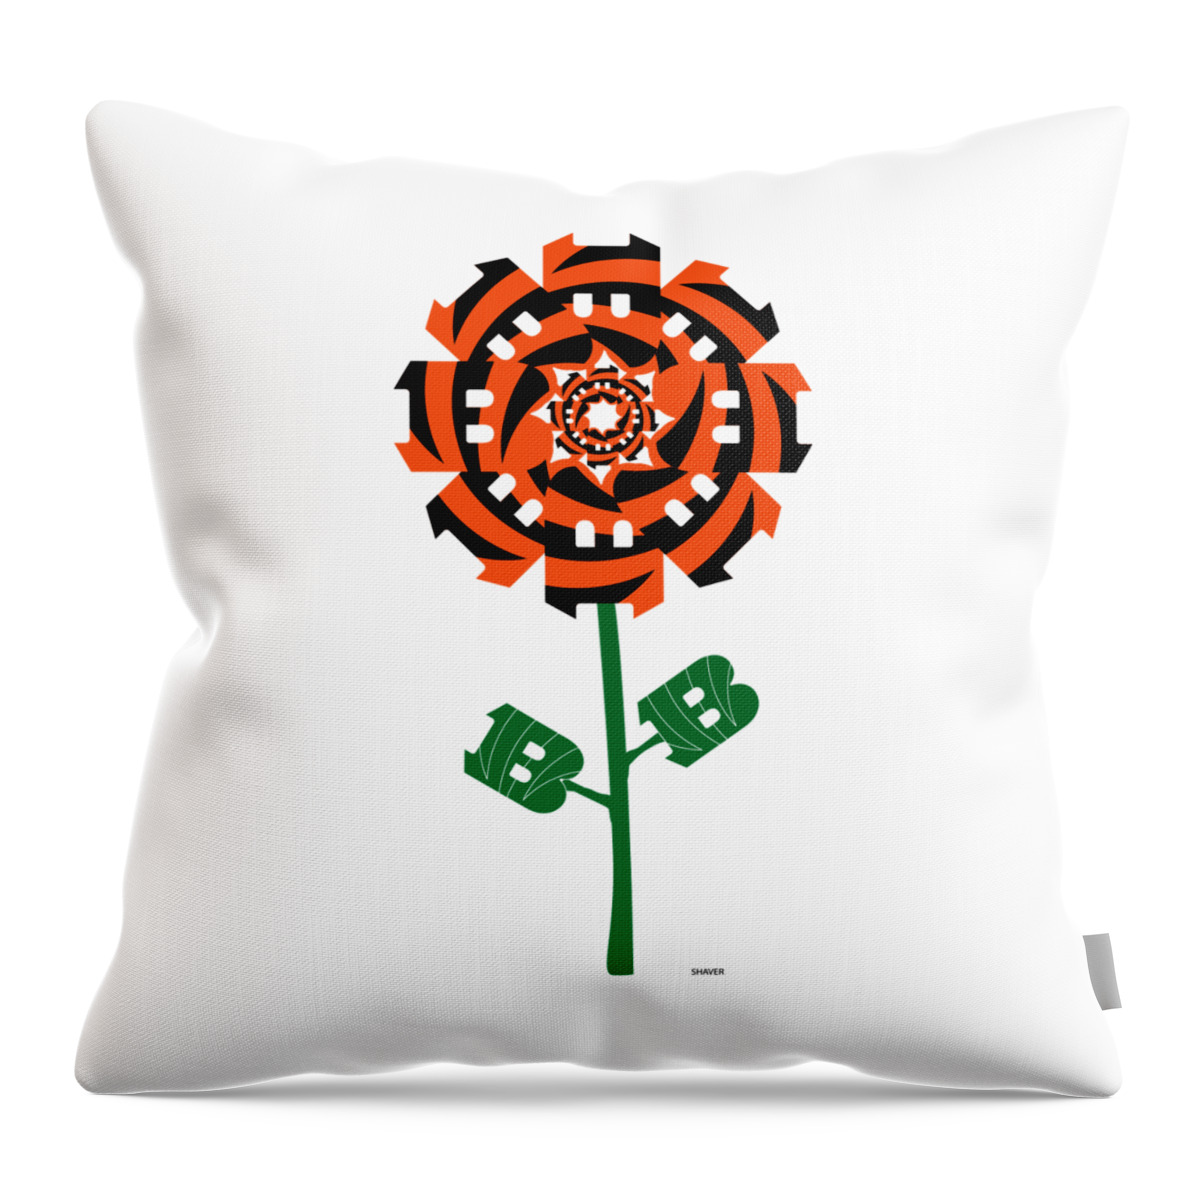 Nfl Throw Pillow featuring the digital art Cincinatti Bangels - NFL Football Team Logo Flower Art by Steven Shaver